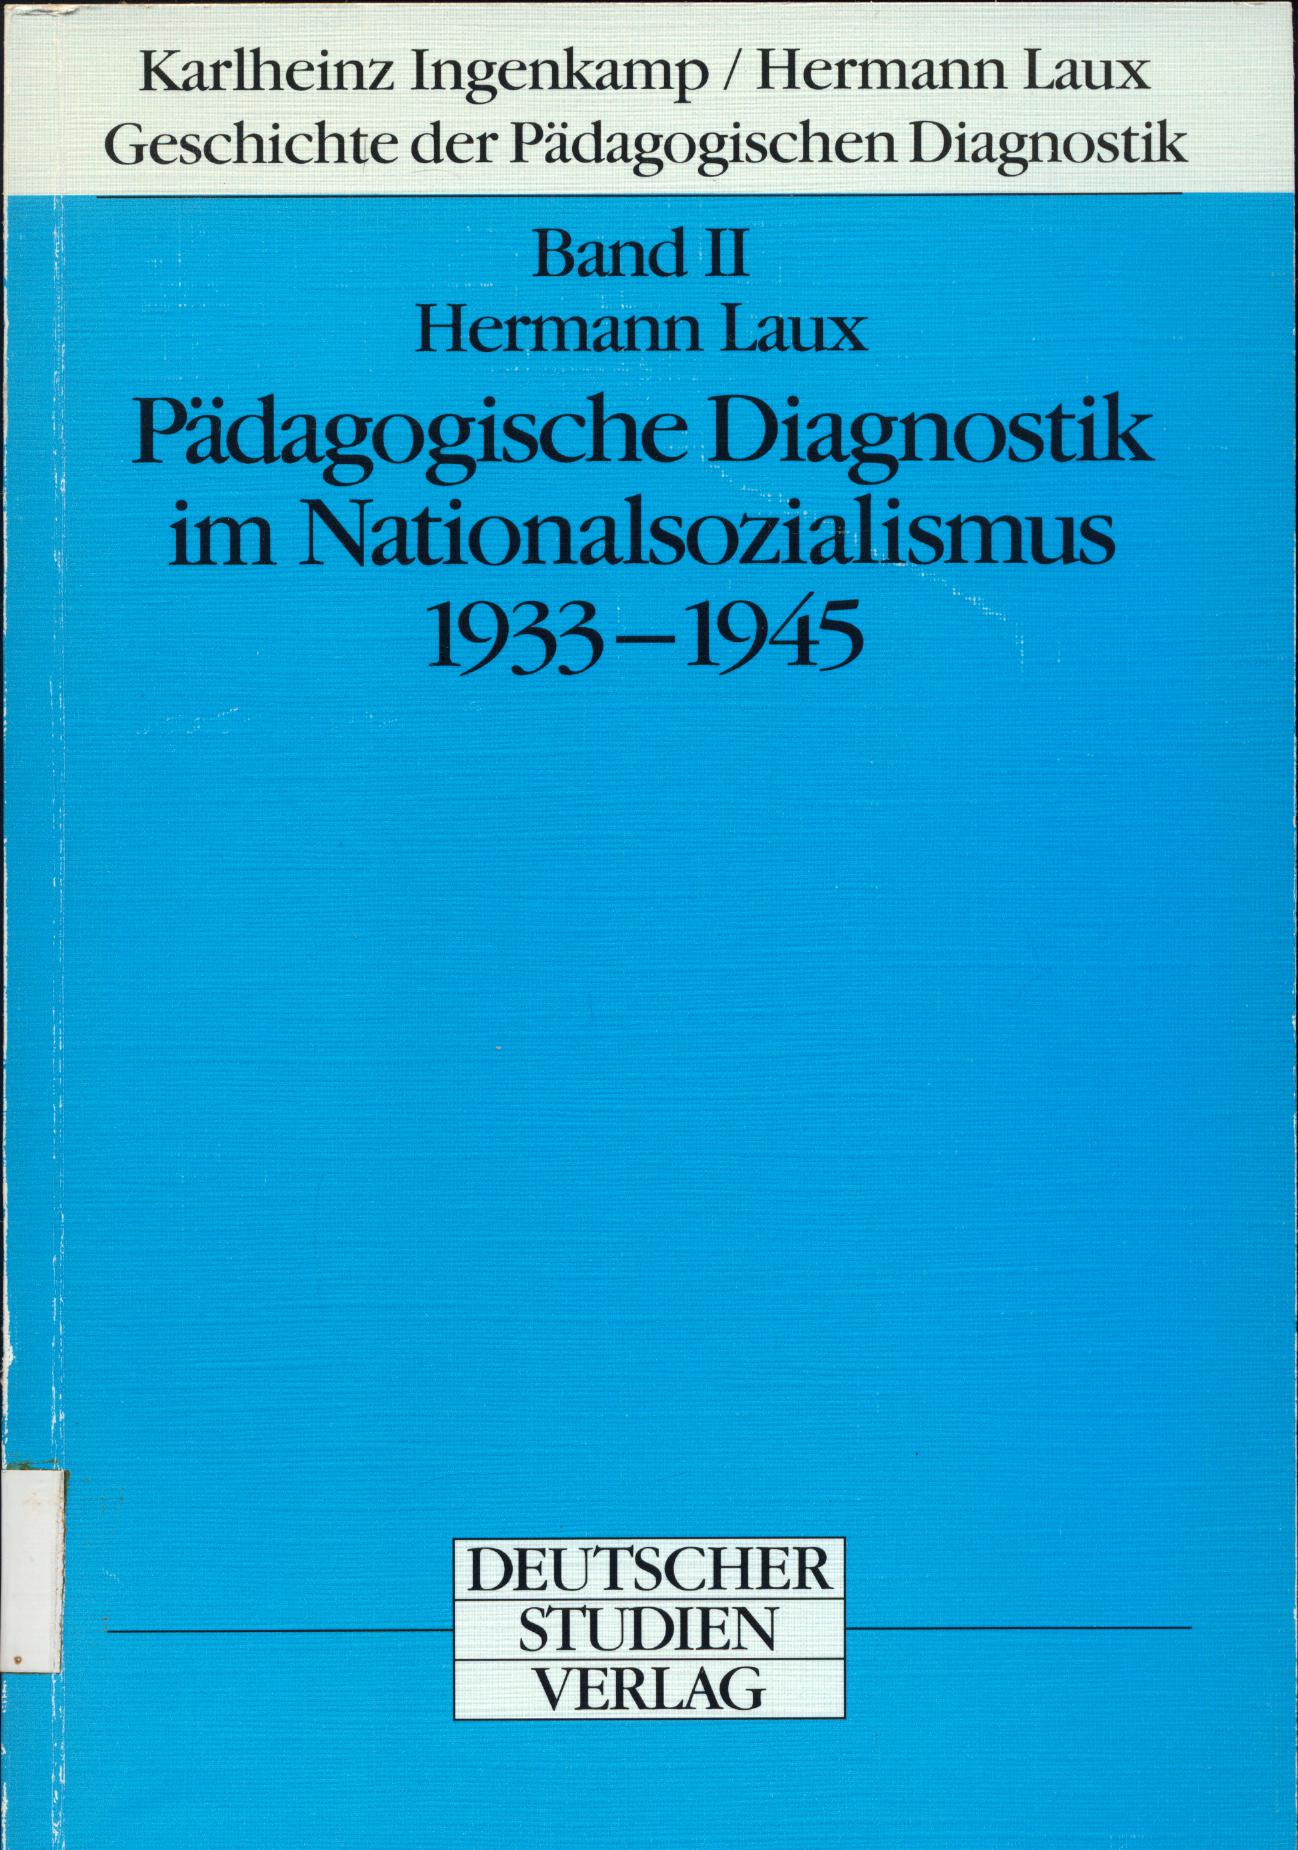 Pädagogische Diagnostik im Nationalsozialismus 1933-1945 Geschichte der Pädagogischen Diagnostik, 2. Band - Ingenkamp, Karlheinz und Hermann Laux